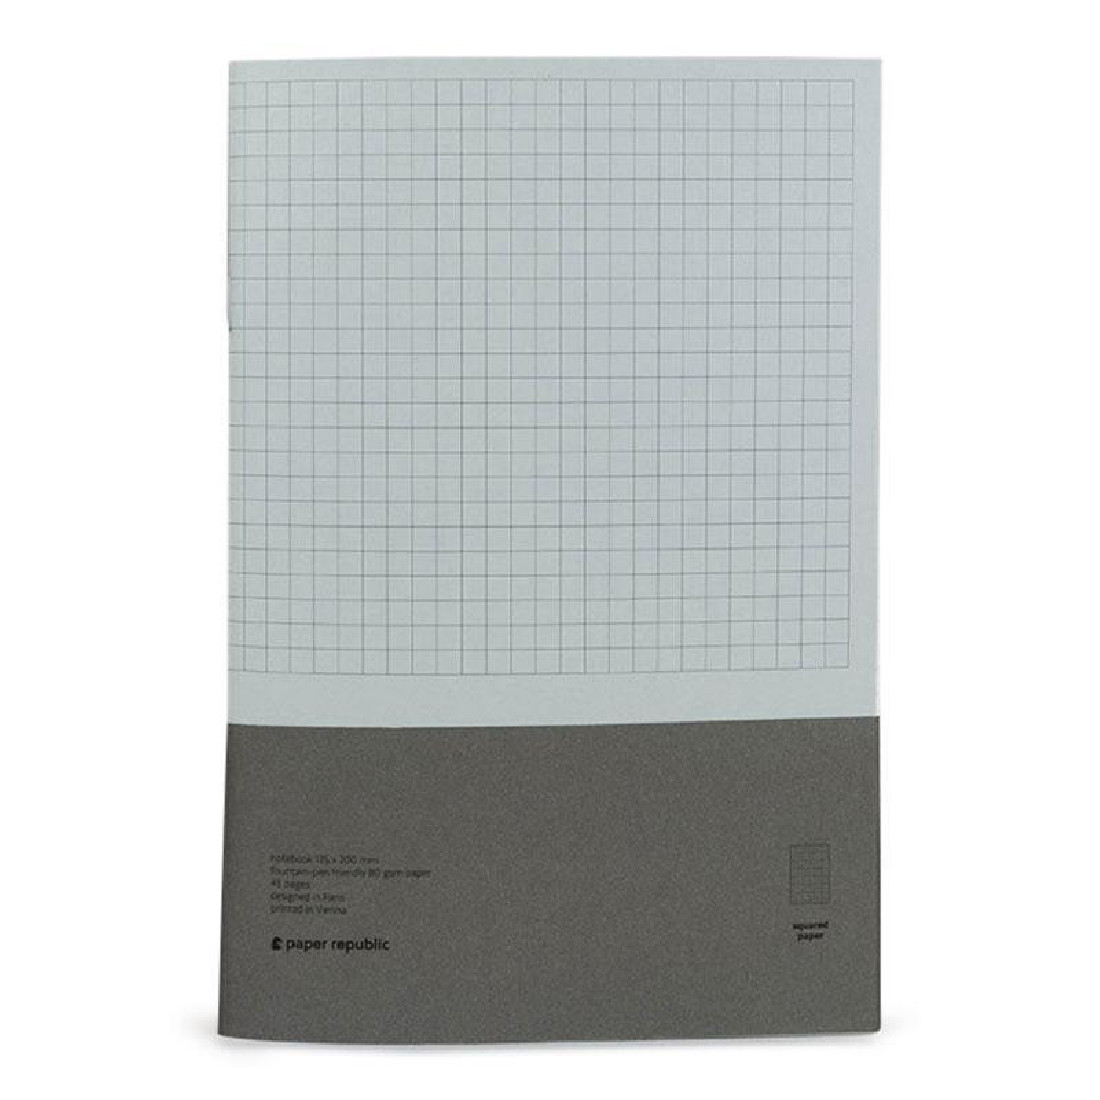 Paper Republic 2 x notebooks (xl) squared